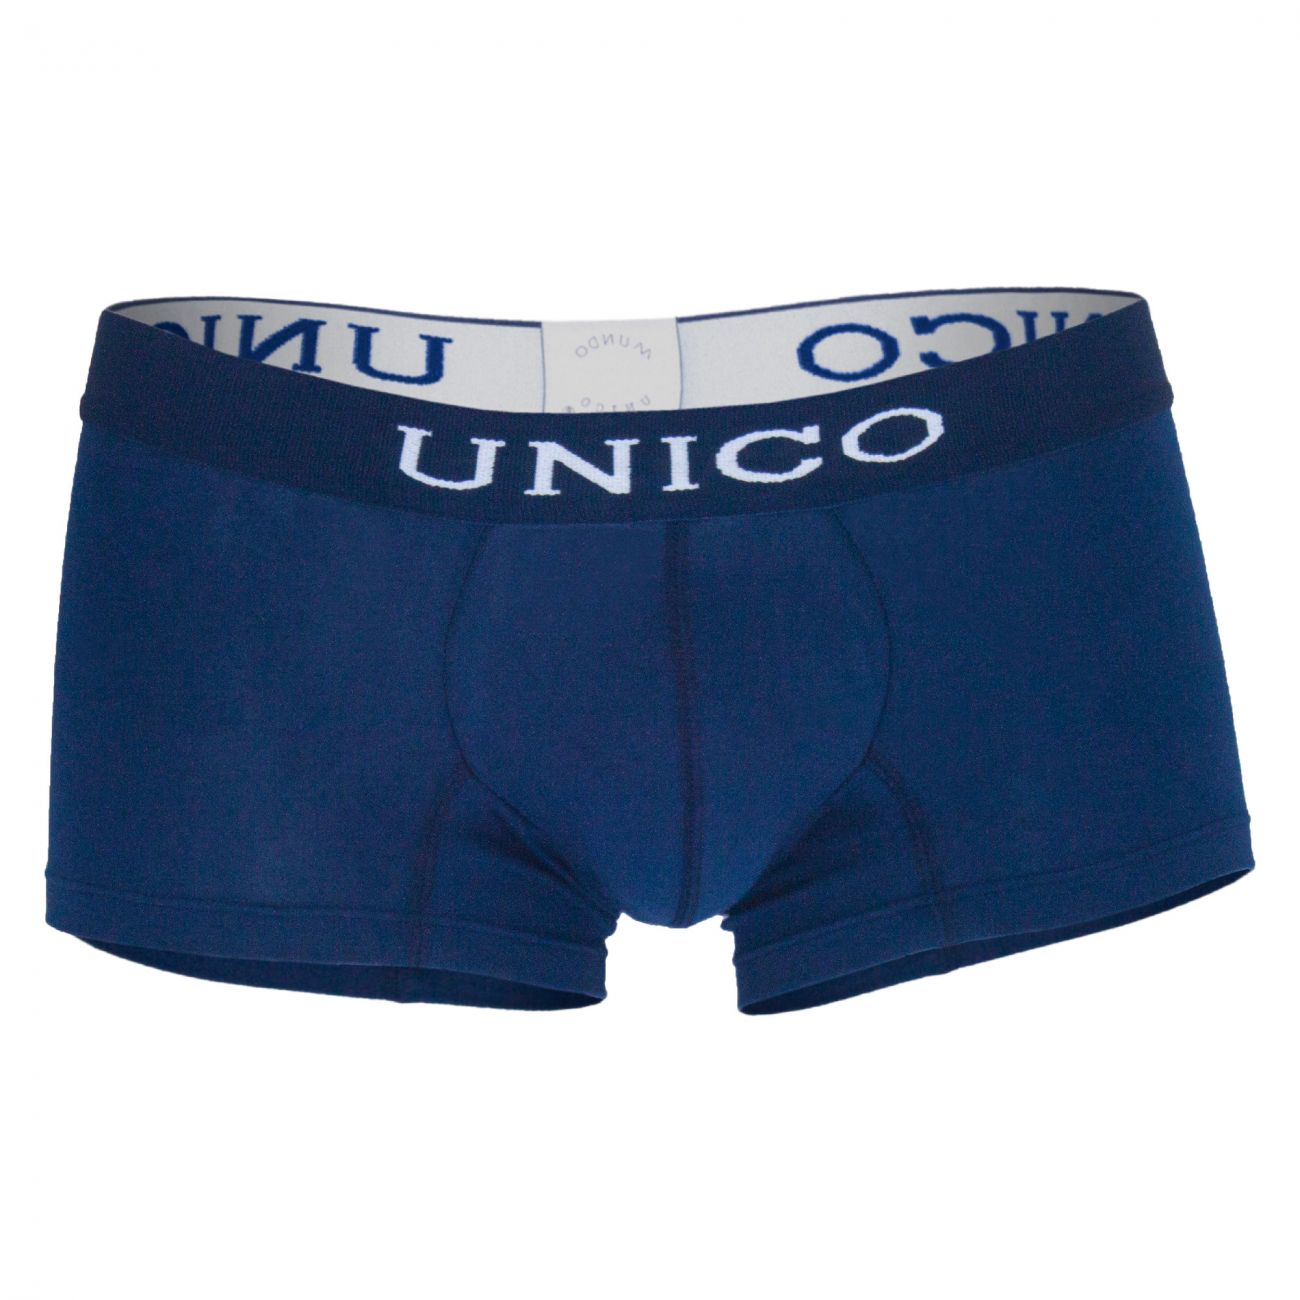 Unico (9612010010282) Boxer Briefs Profundo Cotton